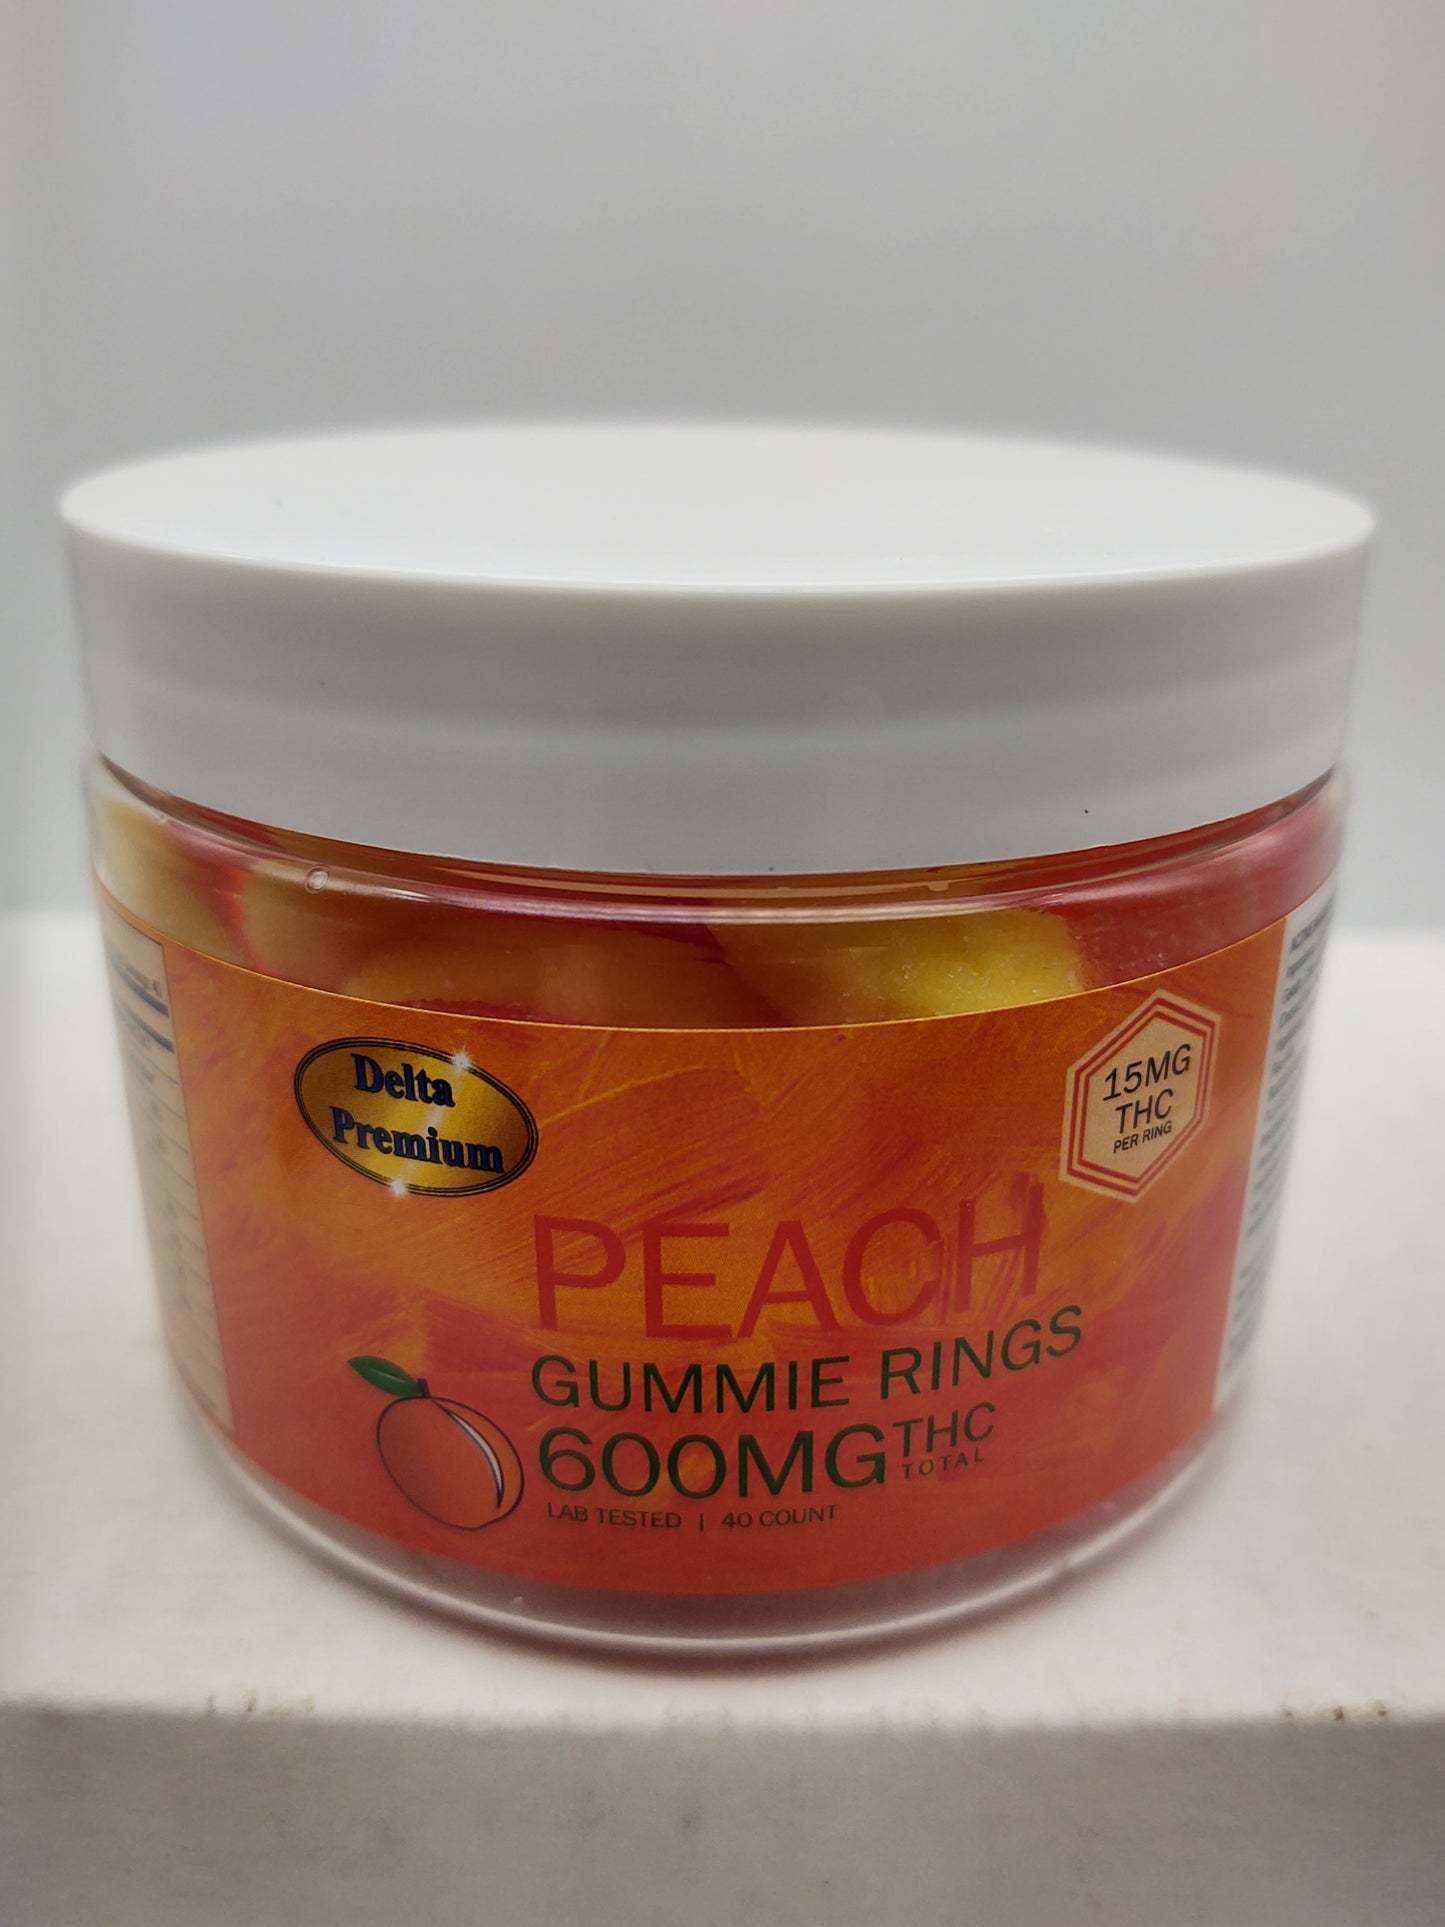 Full spectrum THC CBD peach gummy rings 15mg